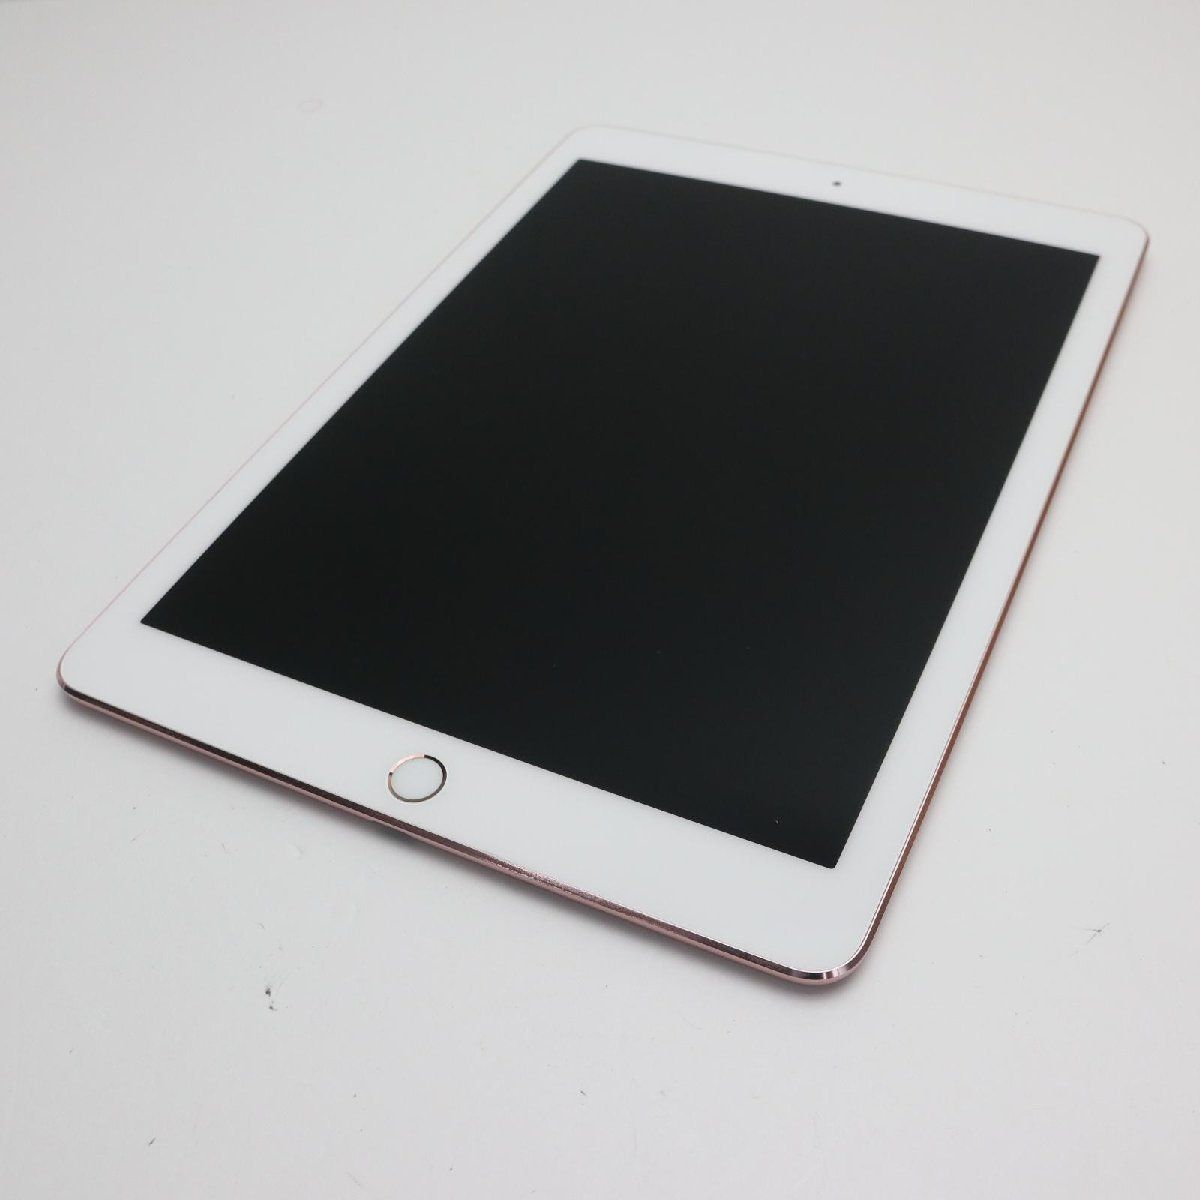 超美品 iPad Pro 9.7インチ Wi-Fi 256GB ローズゴールド